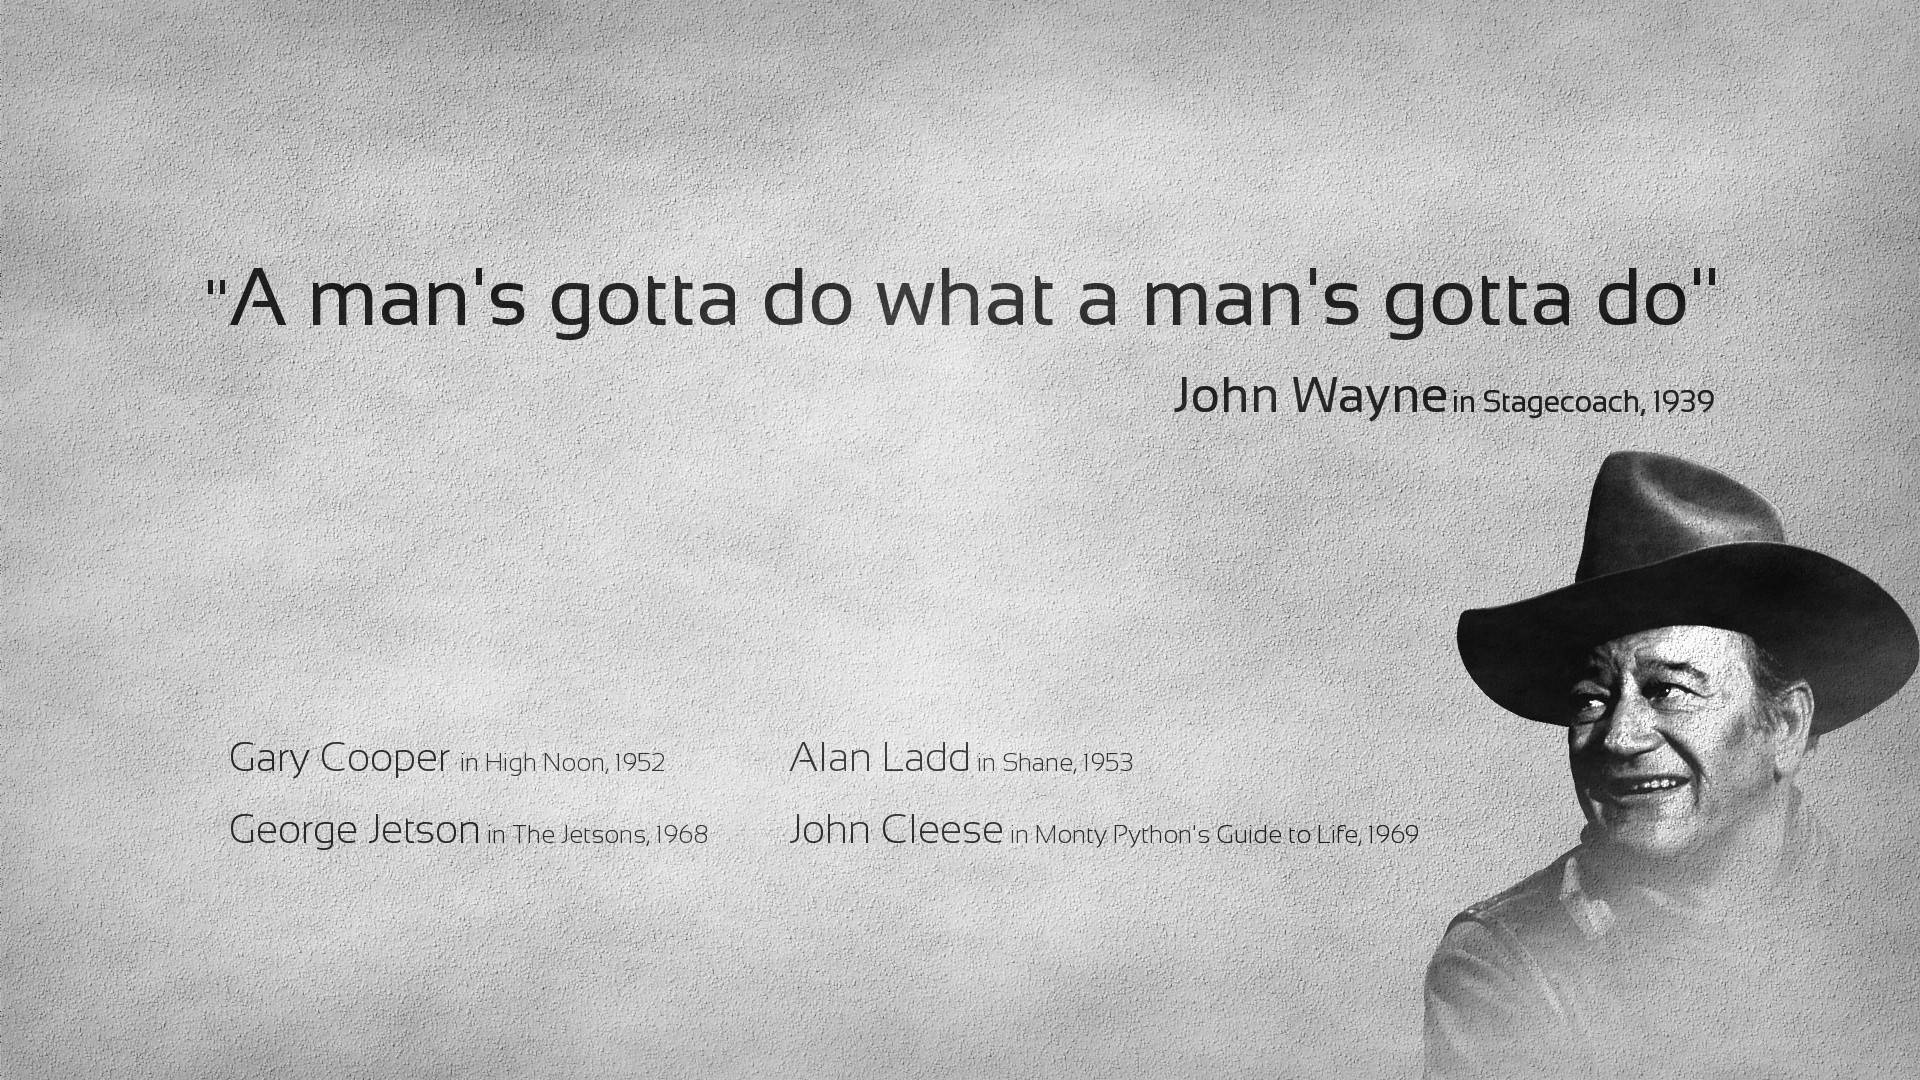 John Wayne Motivational Quote Background